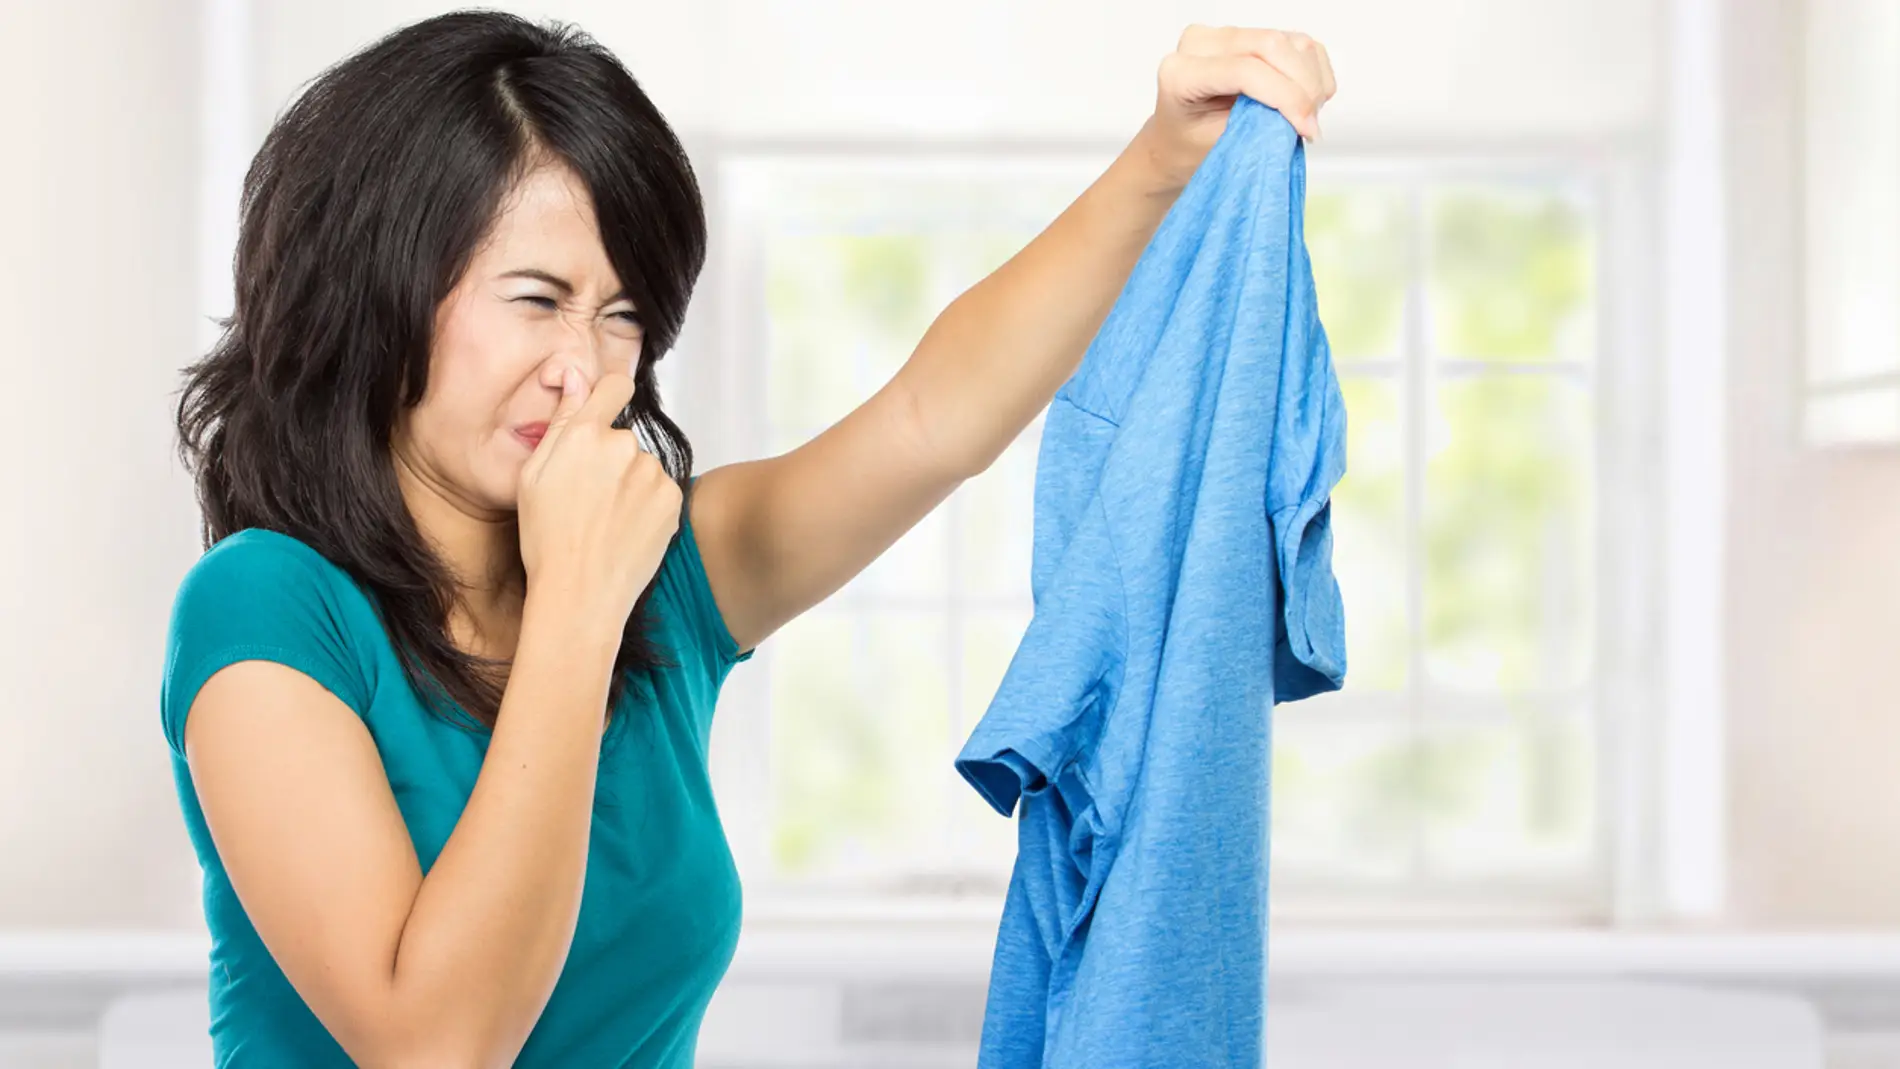 Enojado prefacio desagradable Quita el olor a humedad de tu ropa con estos sencillos trucos